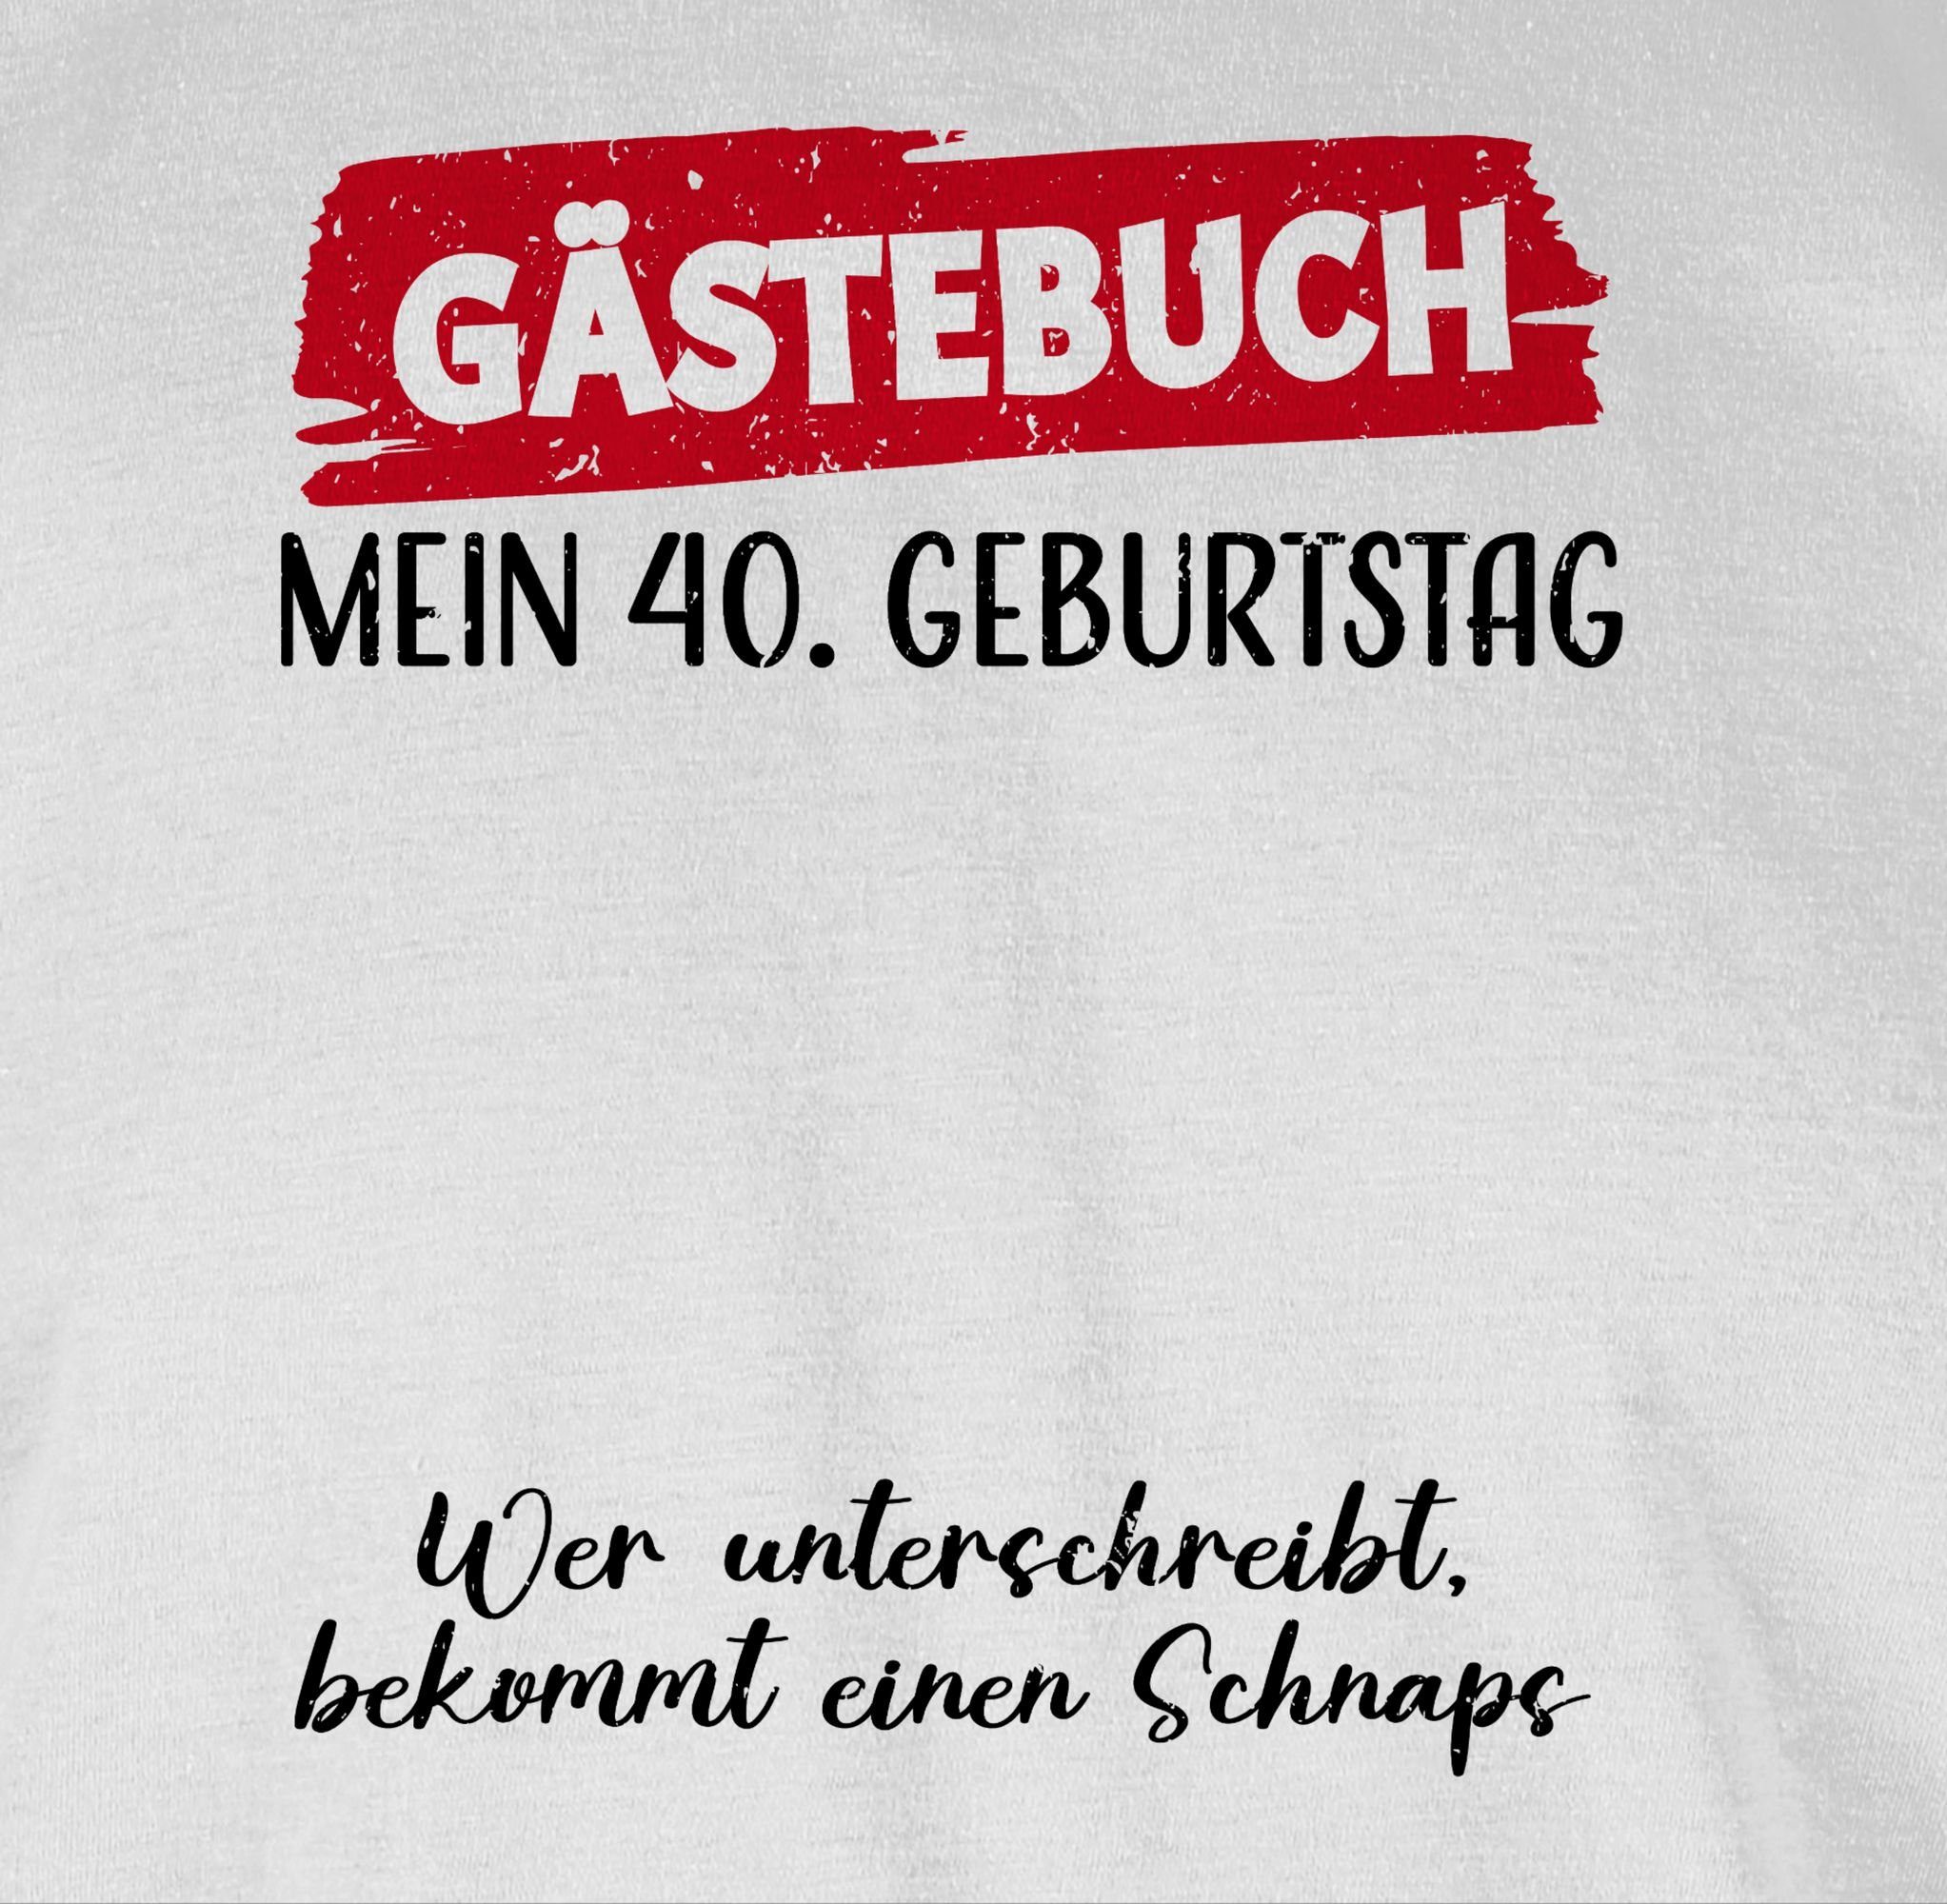 Shirtracer T-Shirt Gästebuch - 40. Unterschrift Gästeliste Geburtstag Gäste 3 Lustig Geburtstag Weiß 40